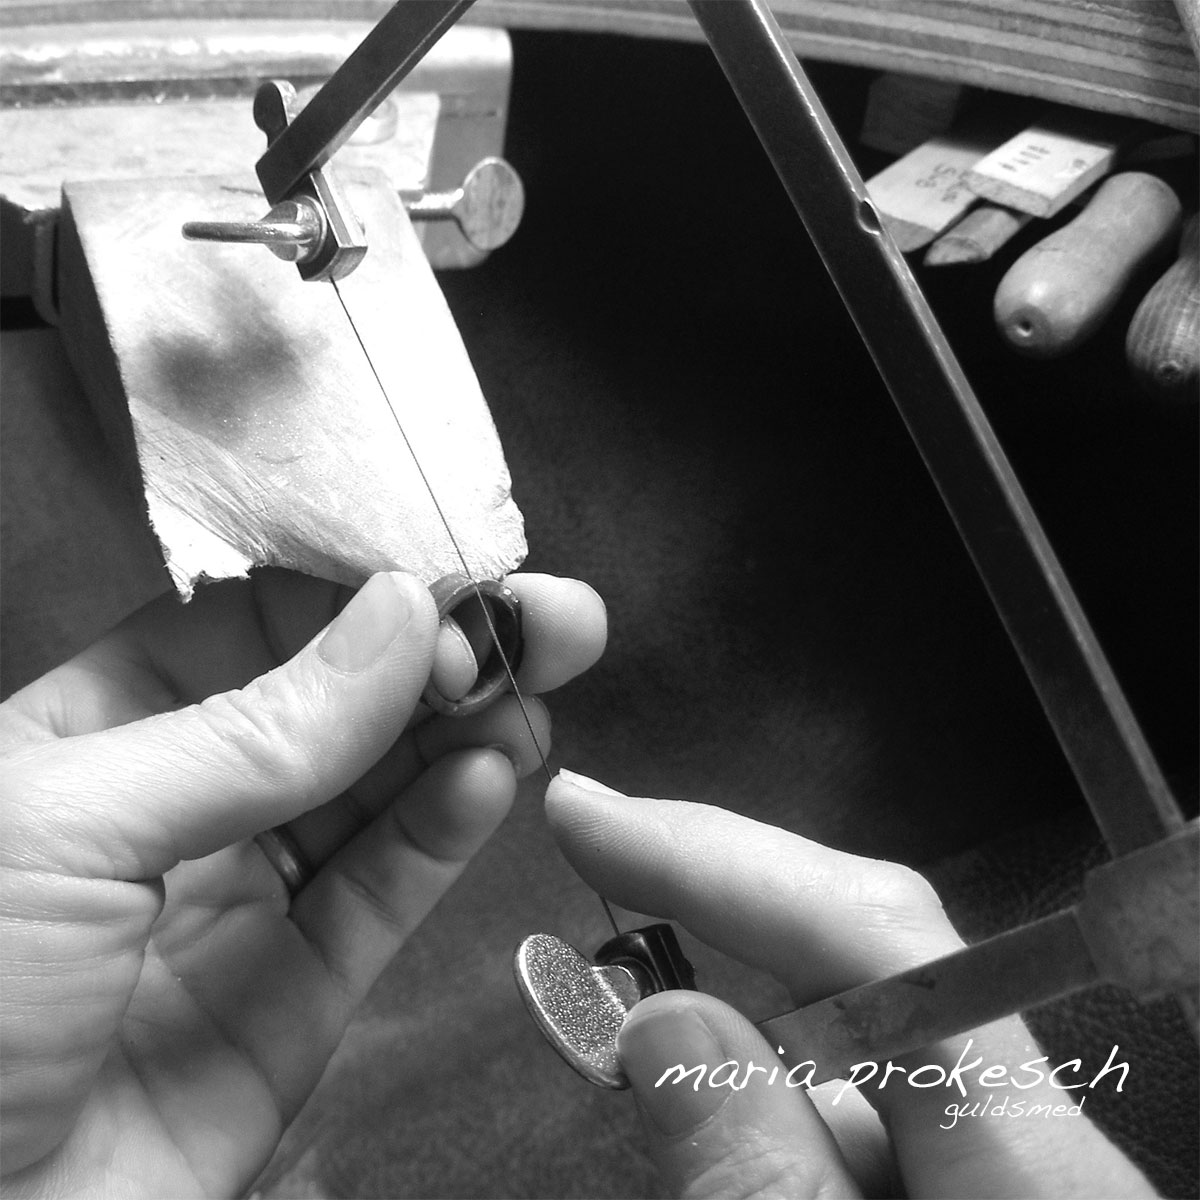 Håndlavede vielsesringe. Ring saves i hånden, arbejde med god kvalitet. Håndlavede smykker og unikke vielsesringe fra Guldsmeden